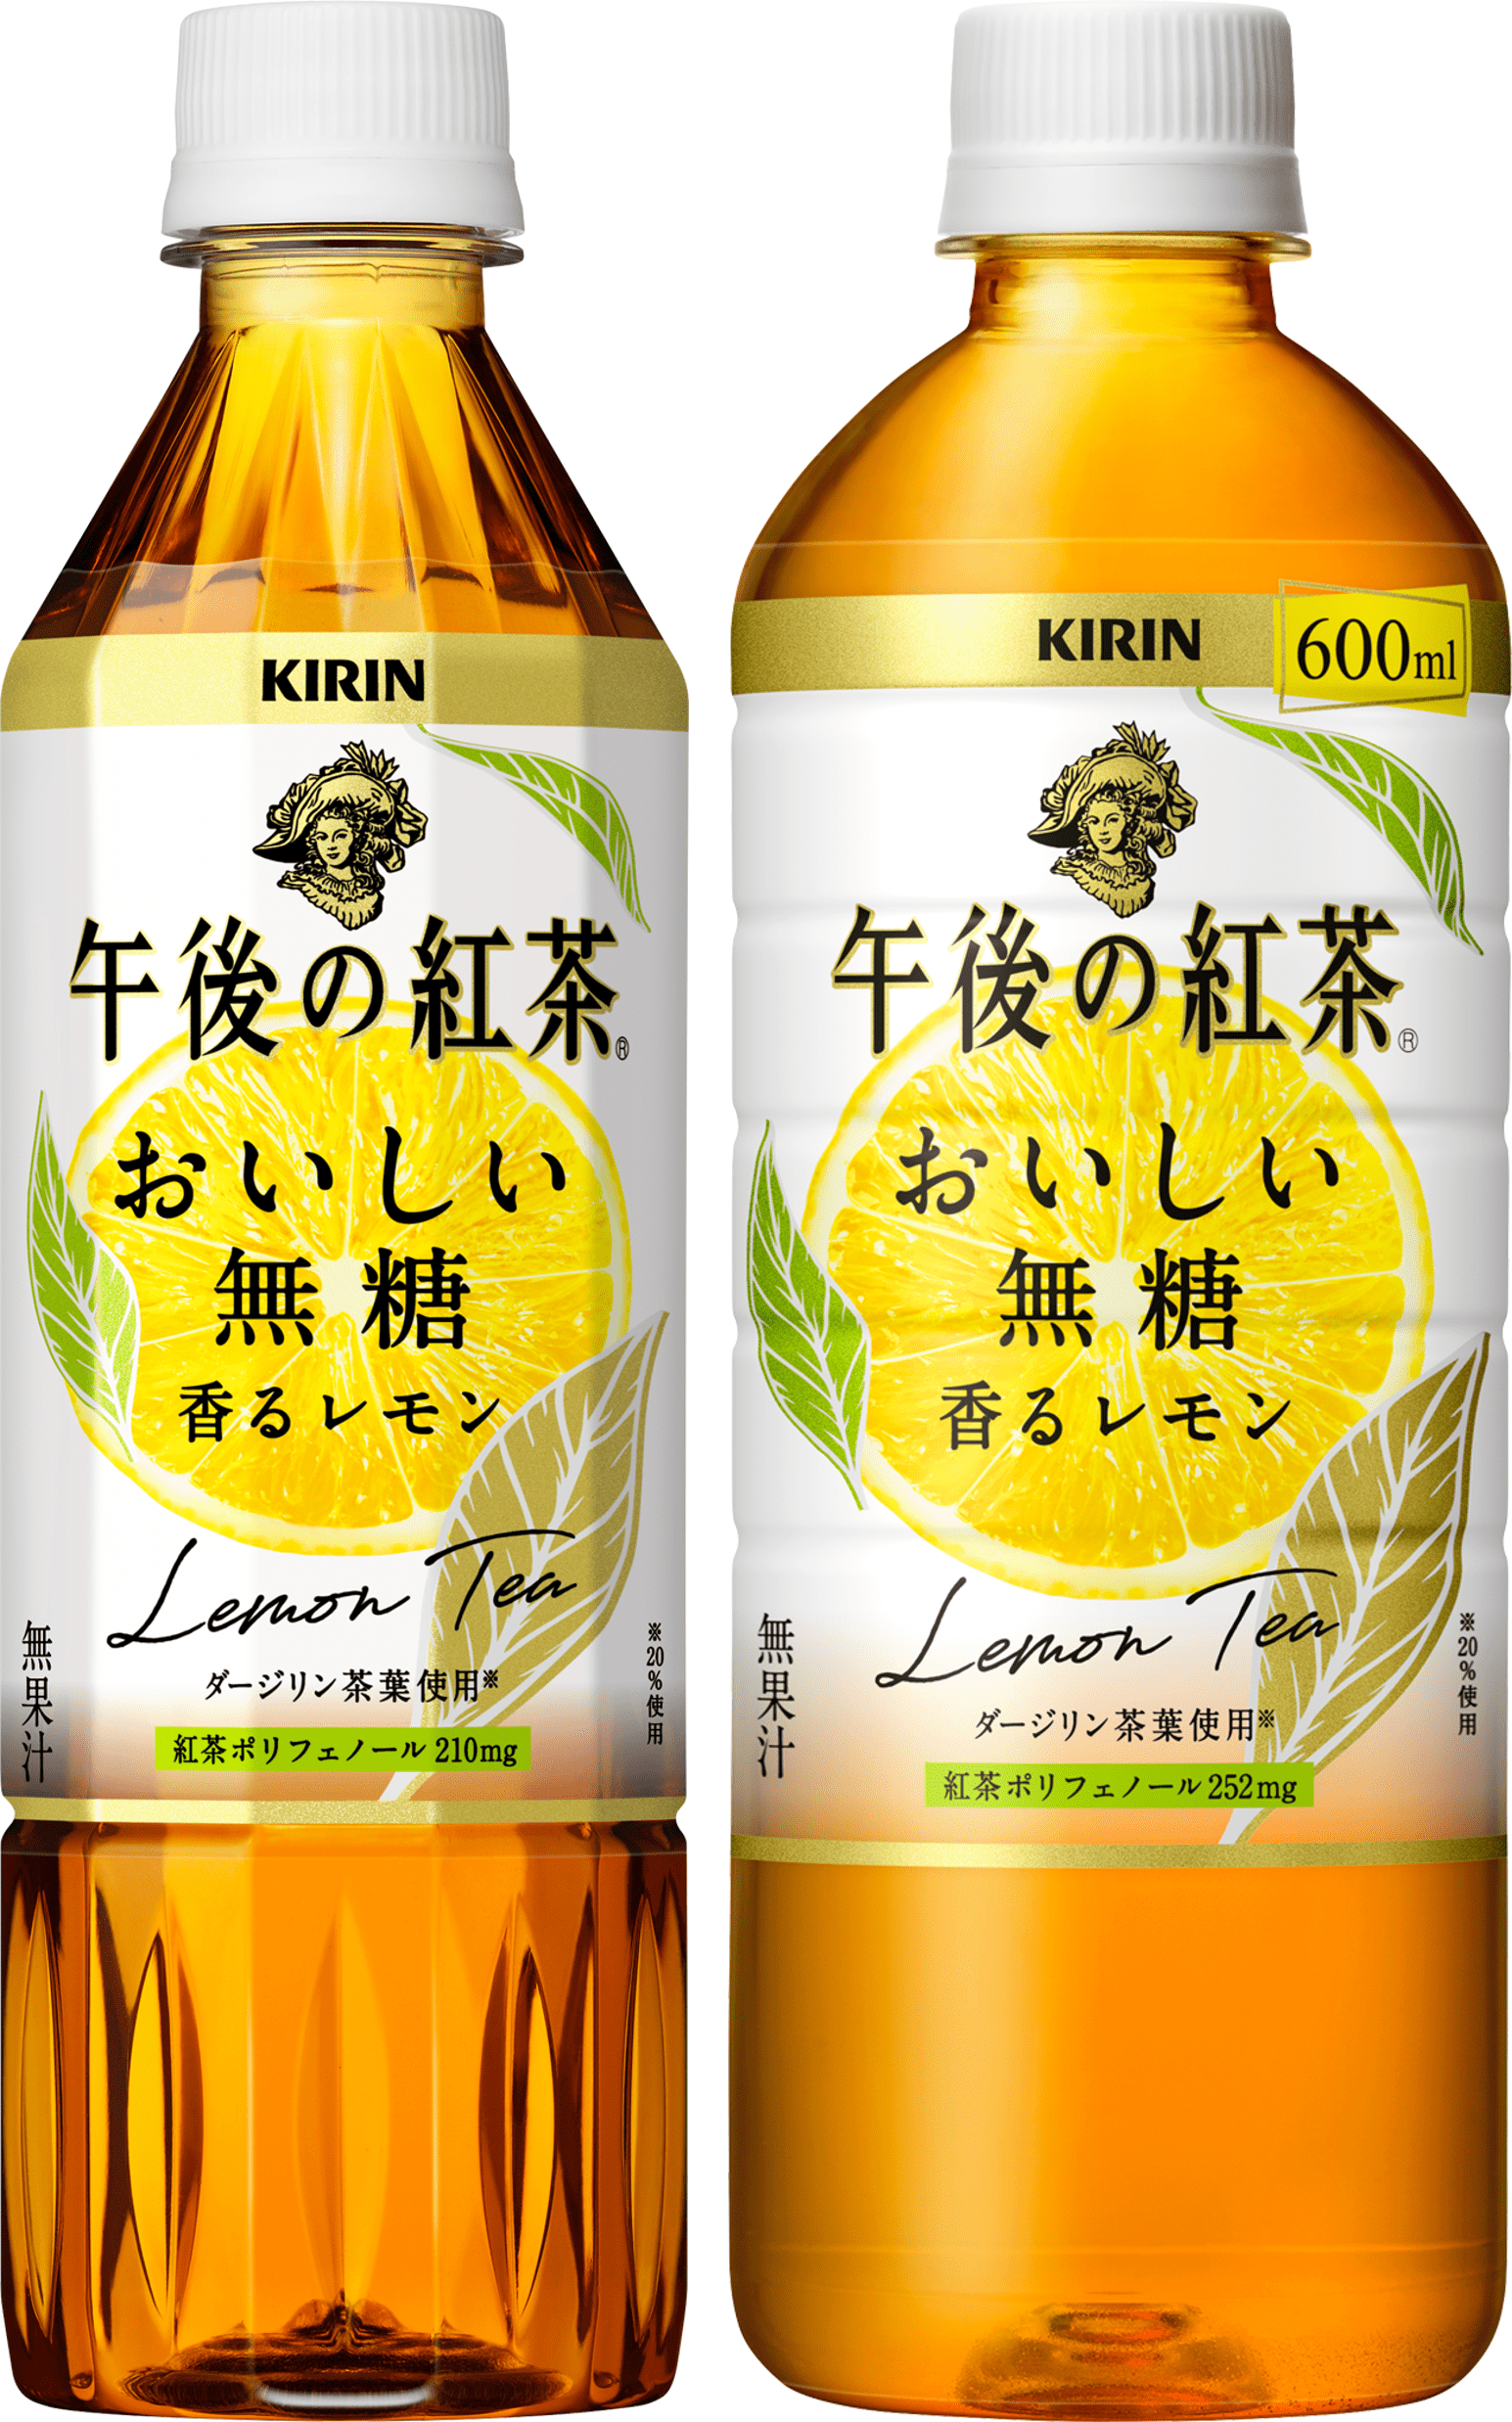 キリン 午後の紅茶 おいしい無糖 香るレモン を9月28日 火 に新発売 キリンホールディングス株式会社のプレスリリース